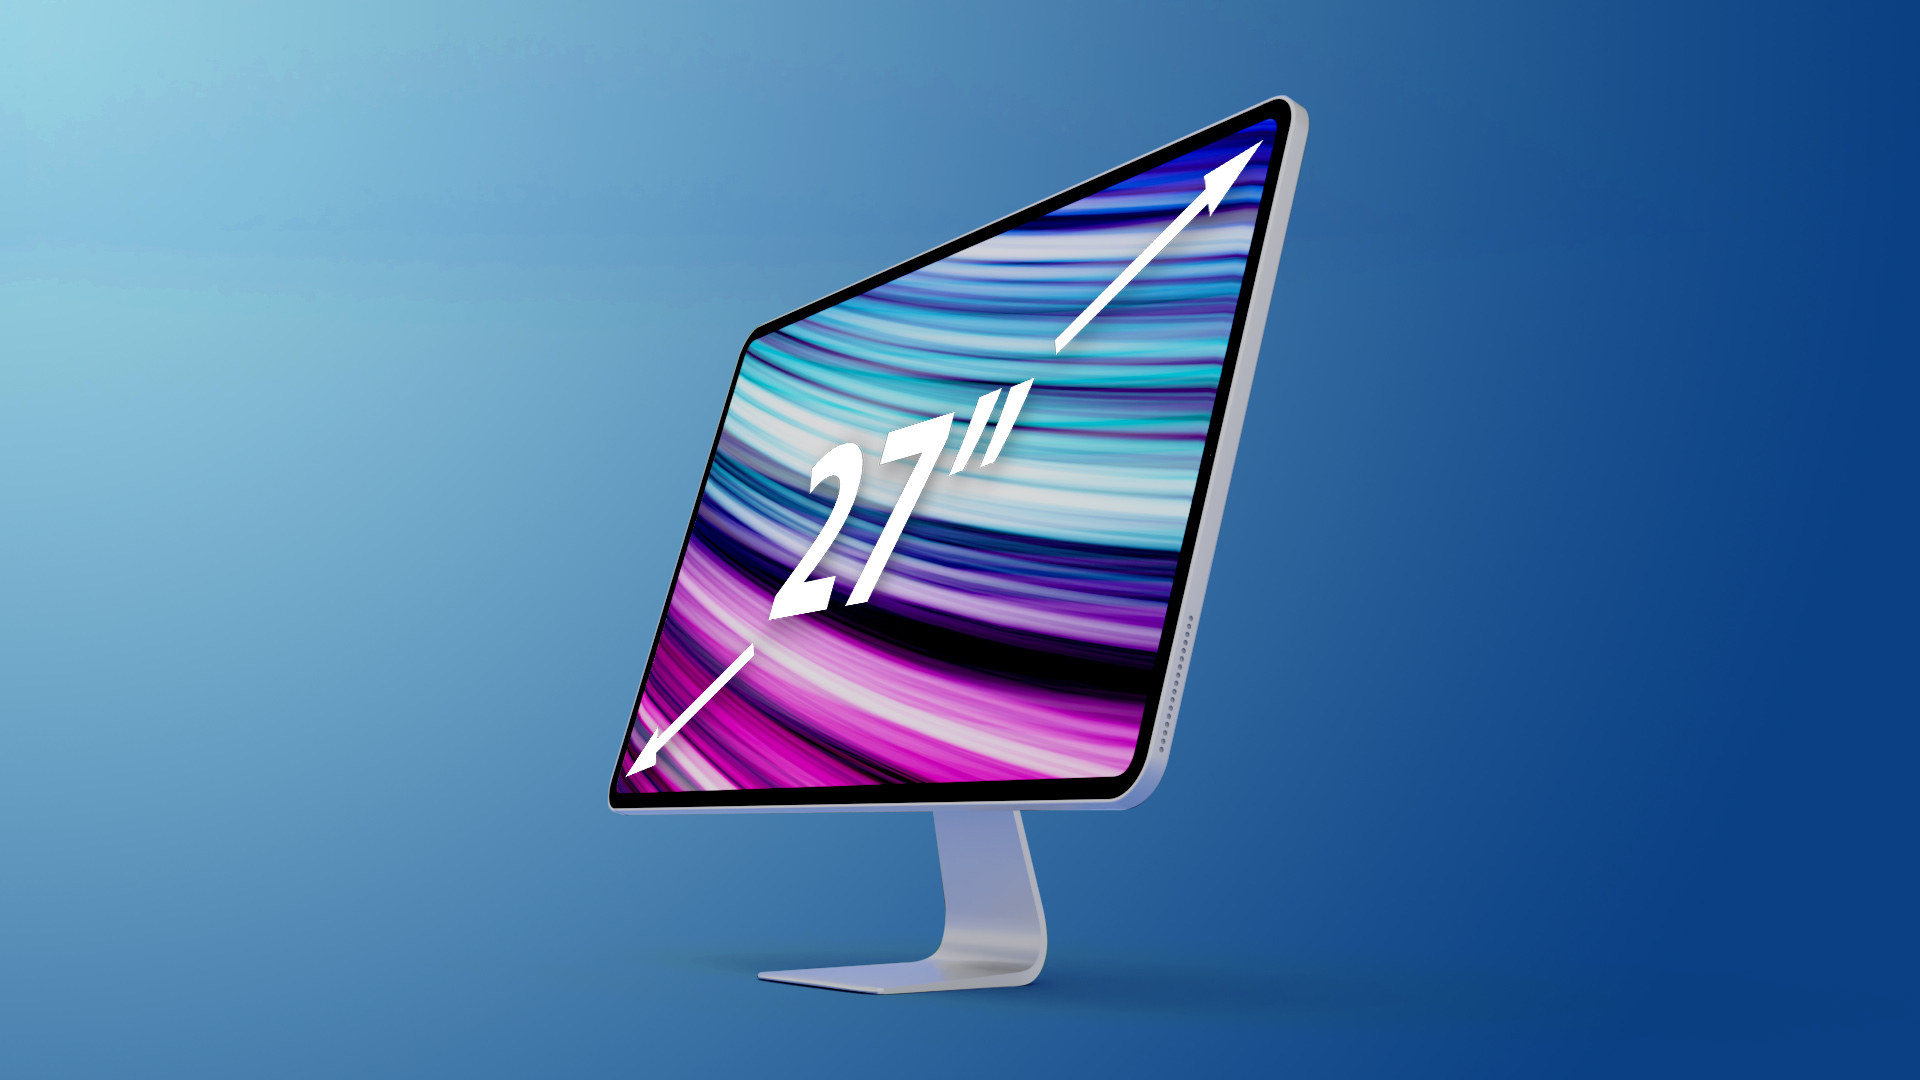 ลือ iMac Pro รุ่นใหม่ เตรียมเปิดตัวปีหน้า พร้อมชิป M1 Pro/Max จอ Mini-LED 27 นิ้ว และพอร์ตอีกเพียบ